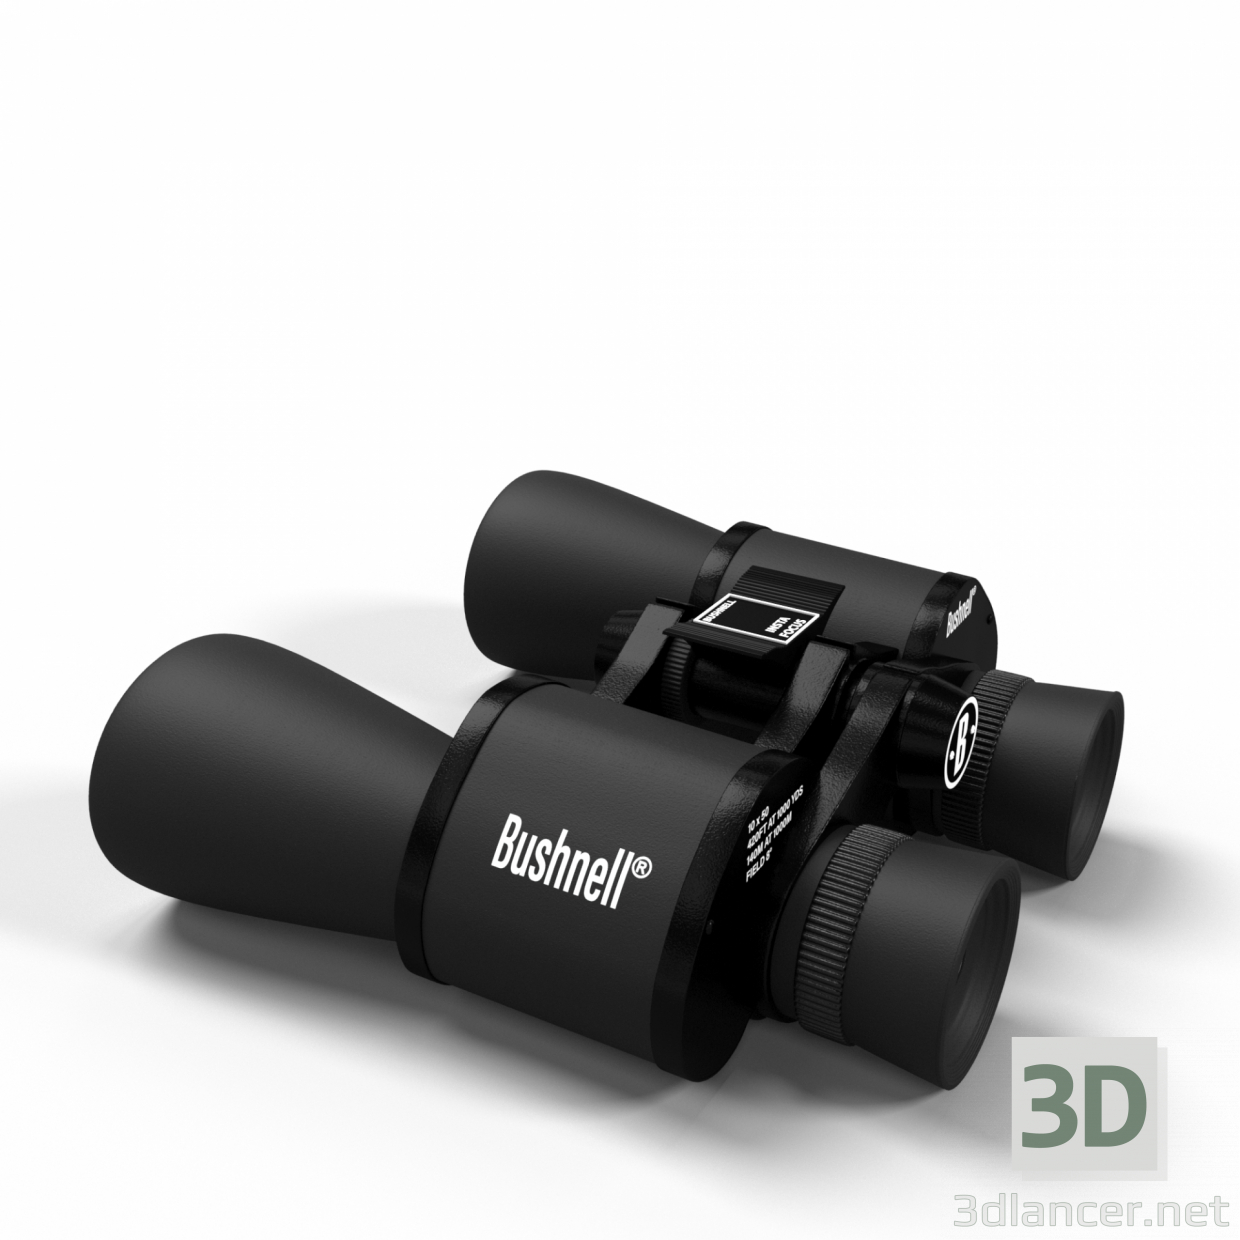 Bushnell-Fernglas 3D-Modell kaufen - Rendern